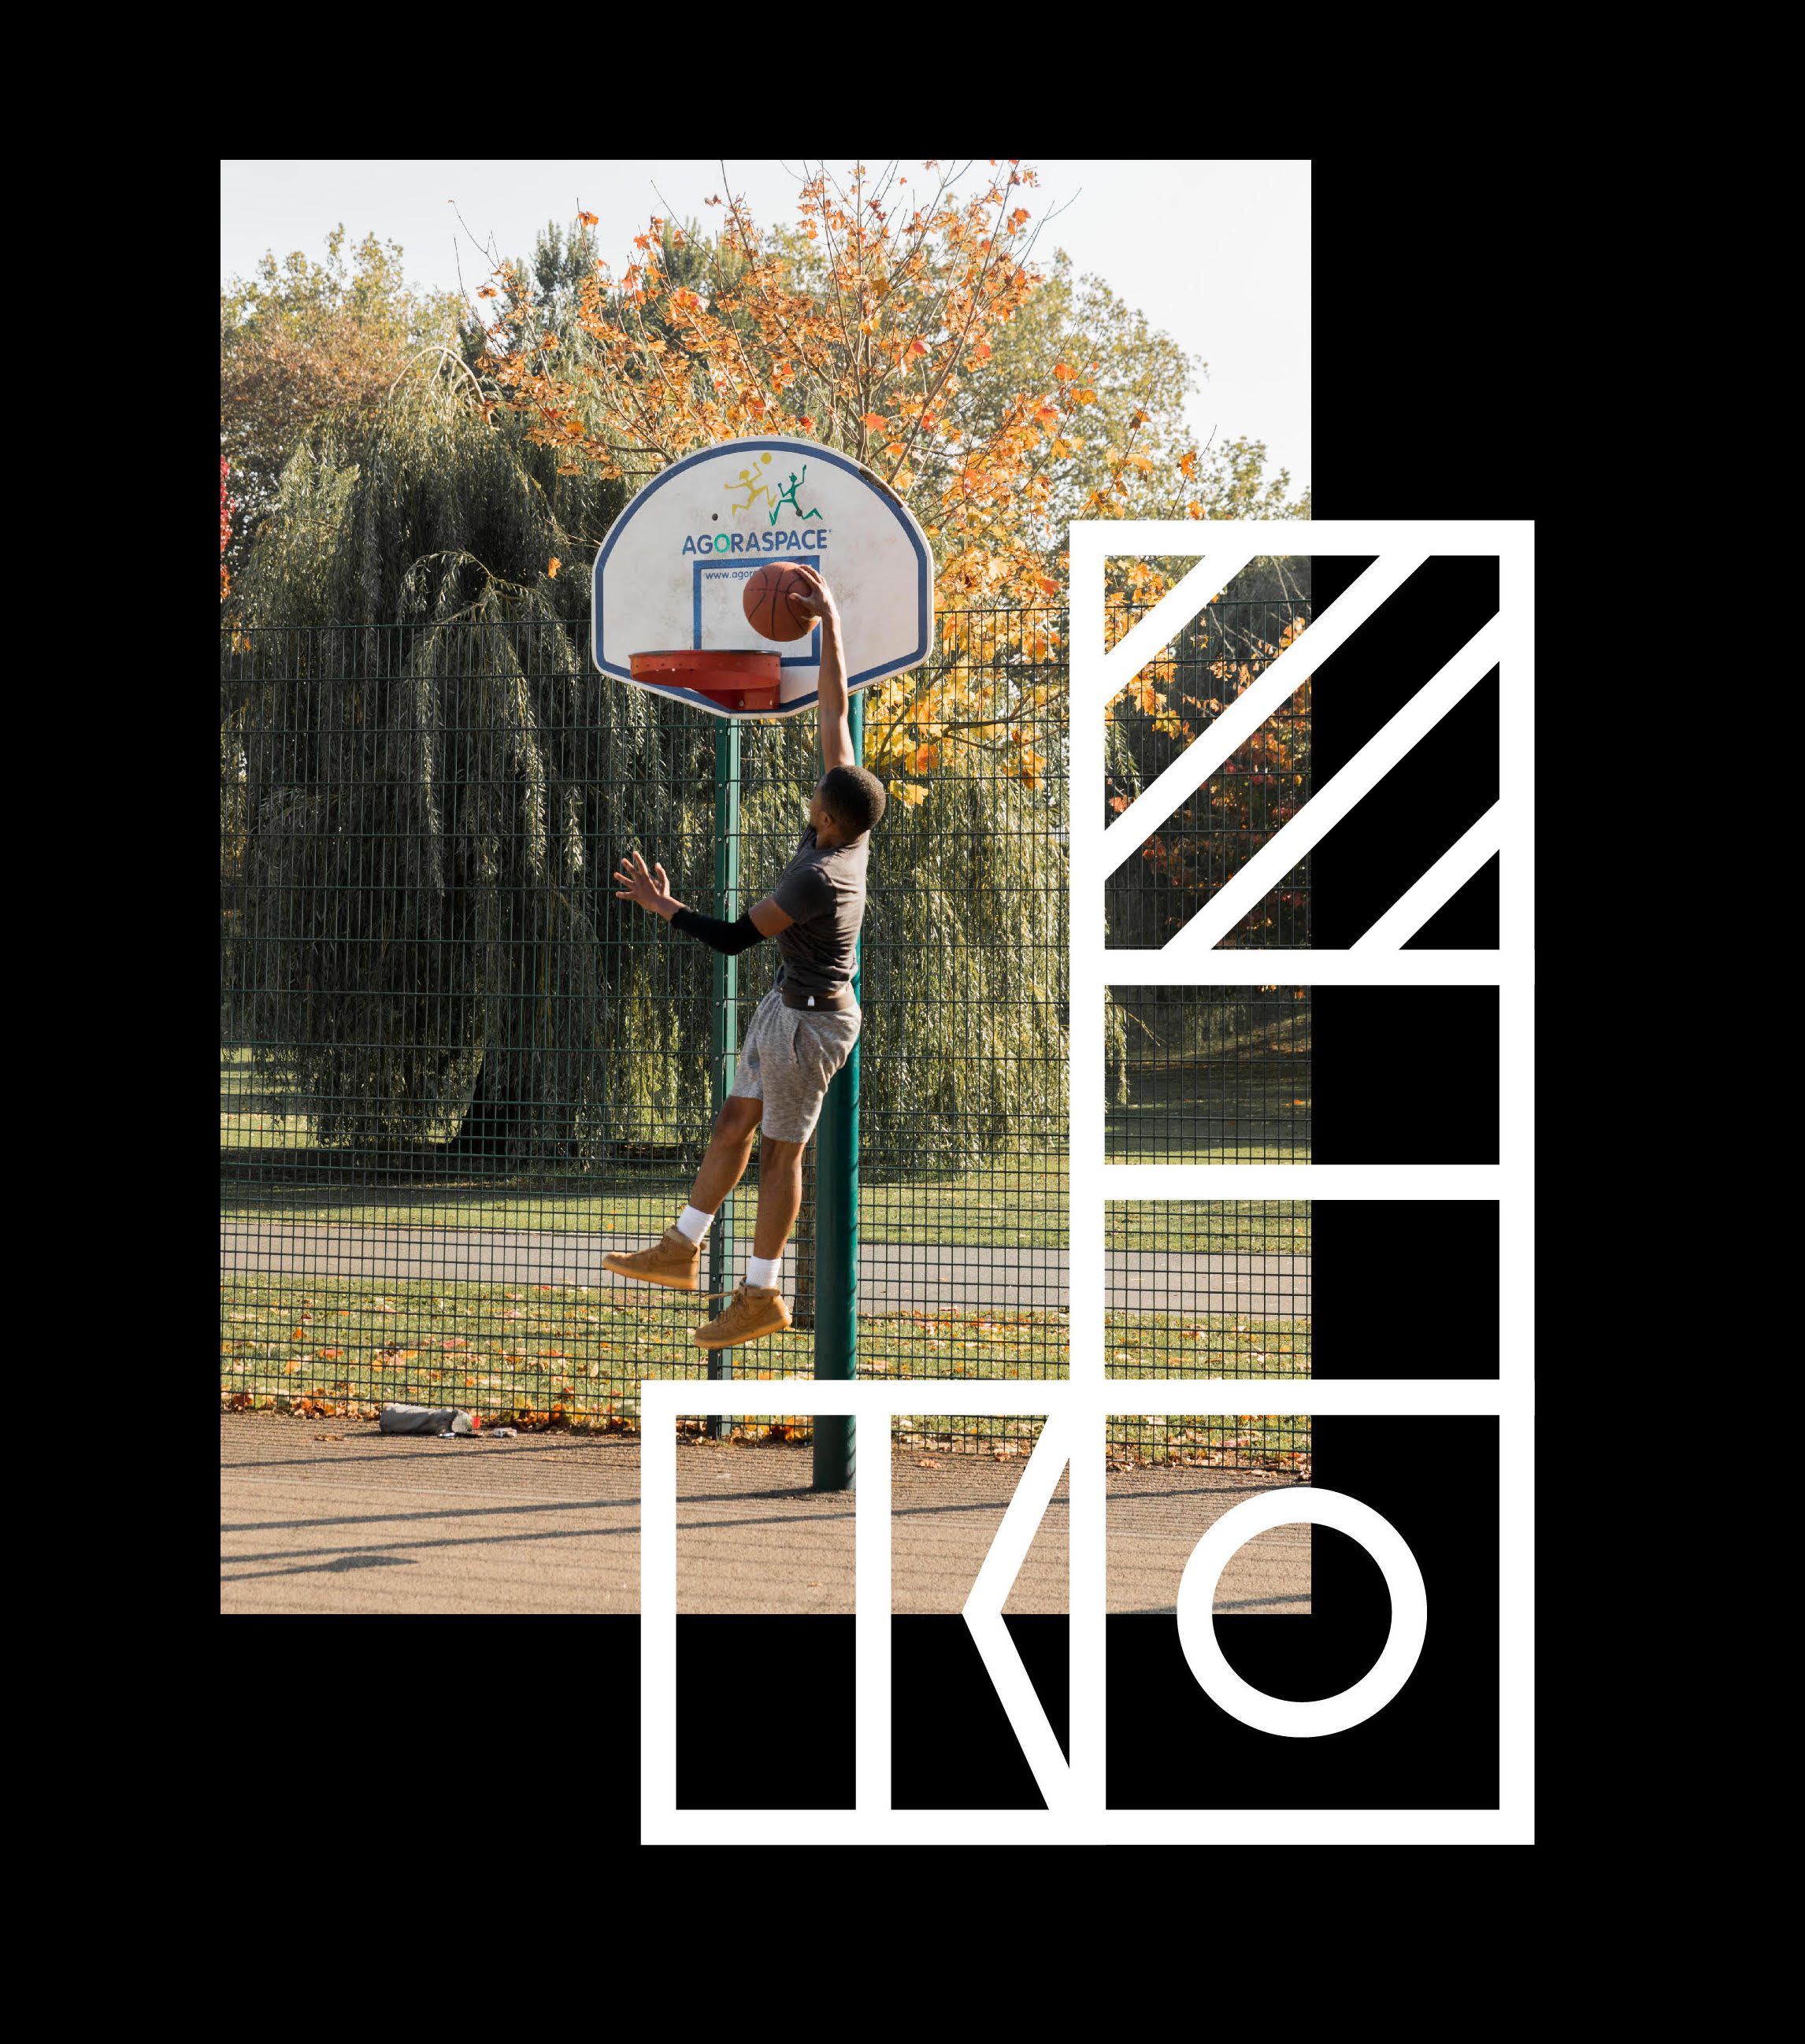 Royal Docks branding with image of young man playing basketball